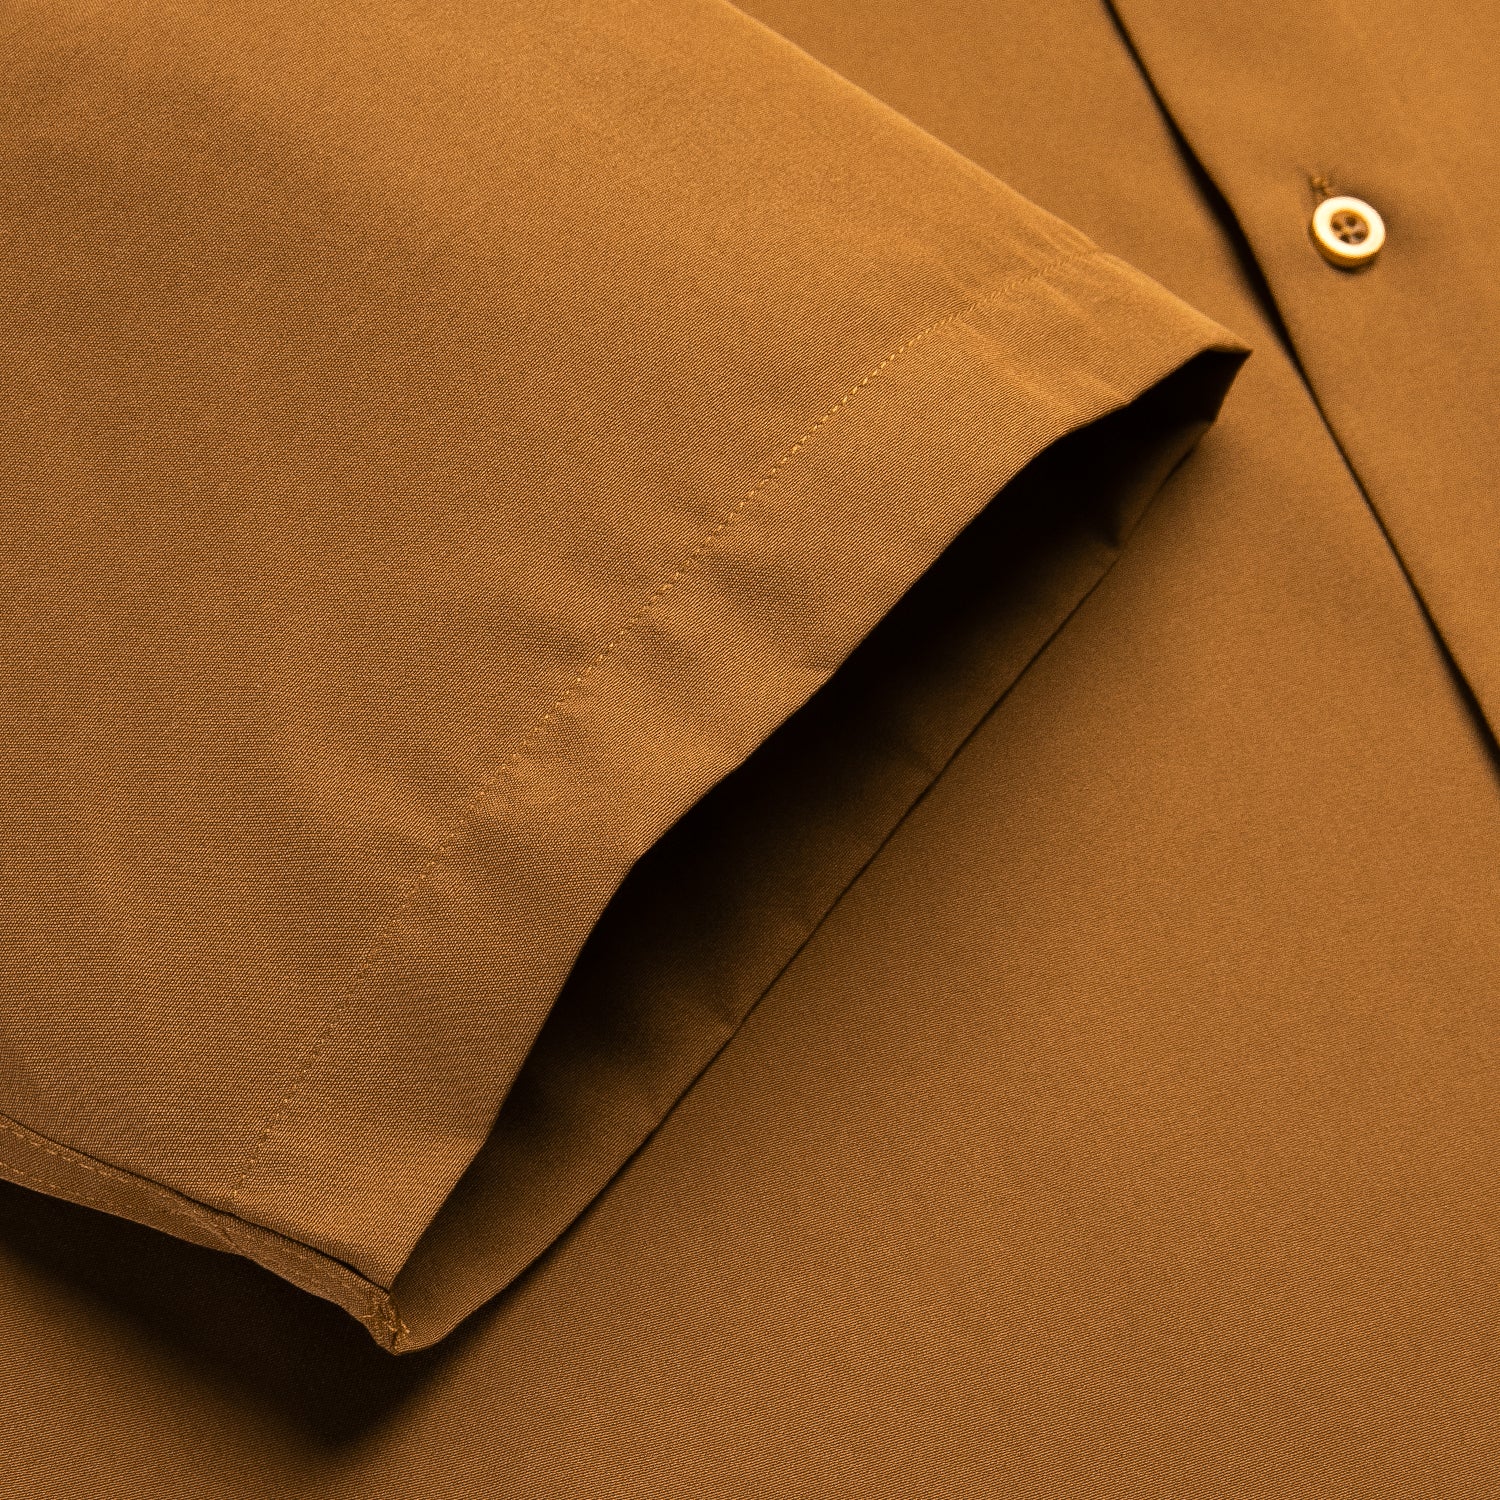 Bronze Solid Silk Men's Short Sleeve Shirt